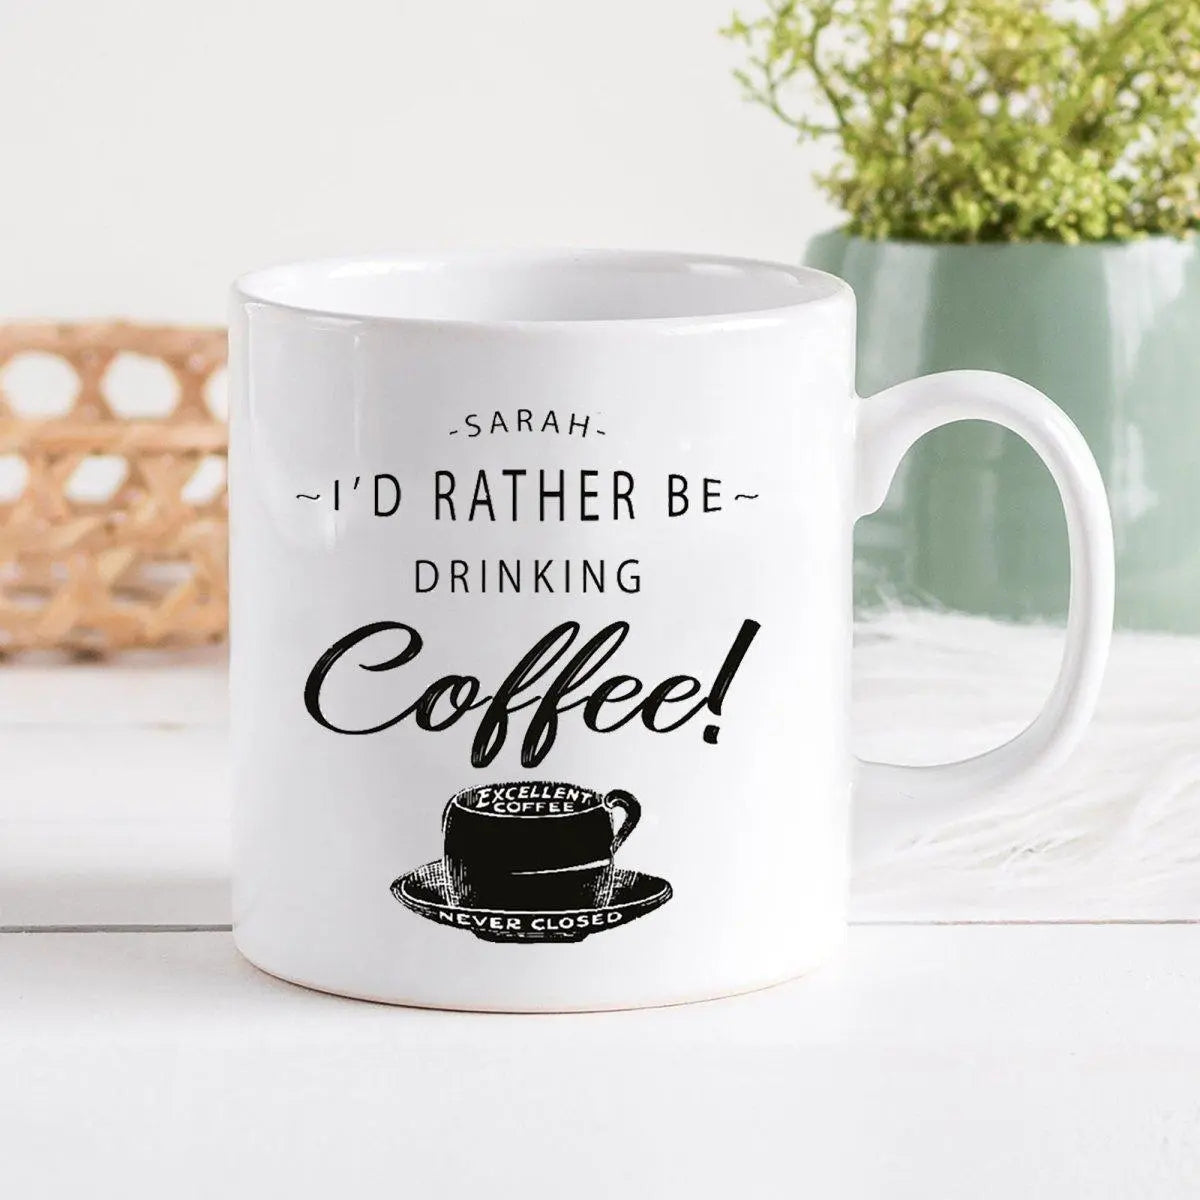 Personalised Coffee Mug, Coffee Gift, Coffee Theme Gifts, Coffee Present, Tin Mug, Camping Mug, Custom Coffee Cup, Coffee Mugs, Drink - Amy Lucy